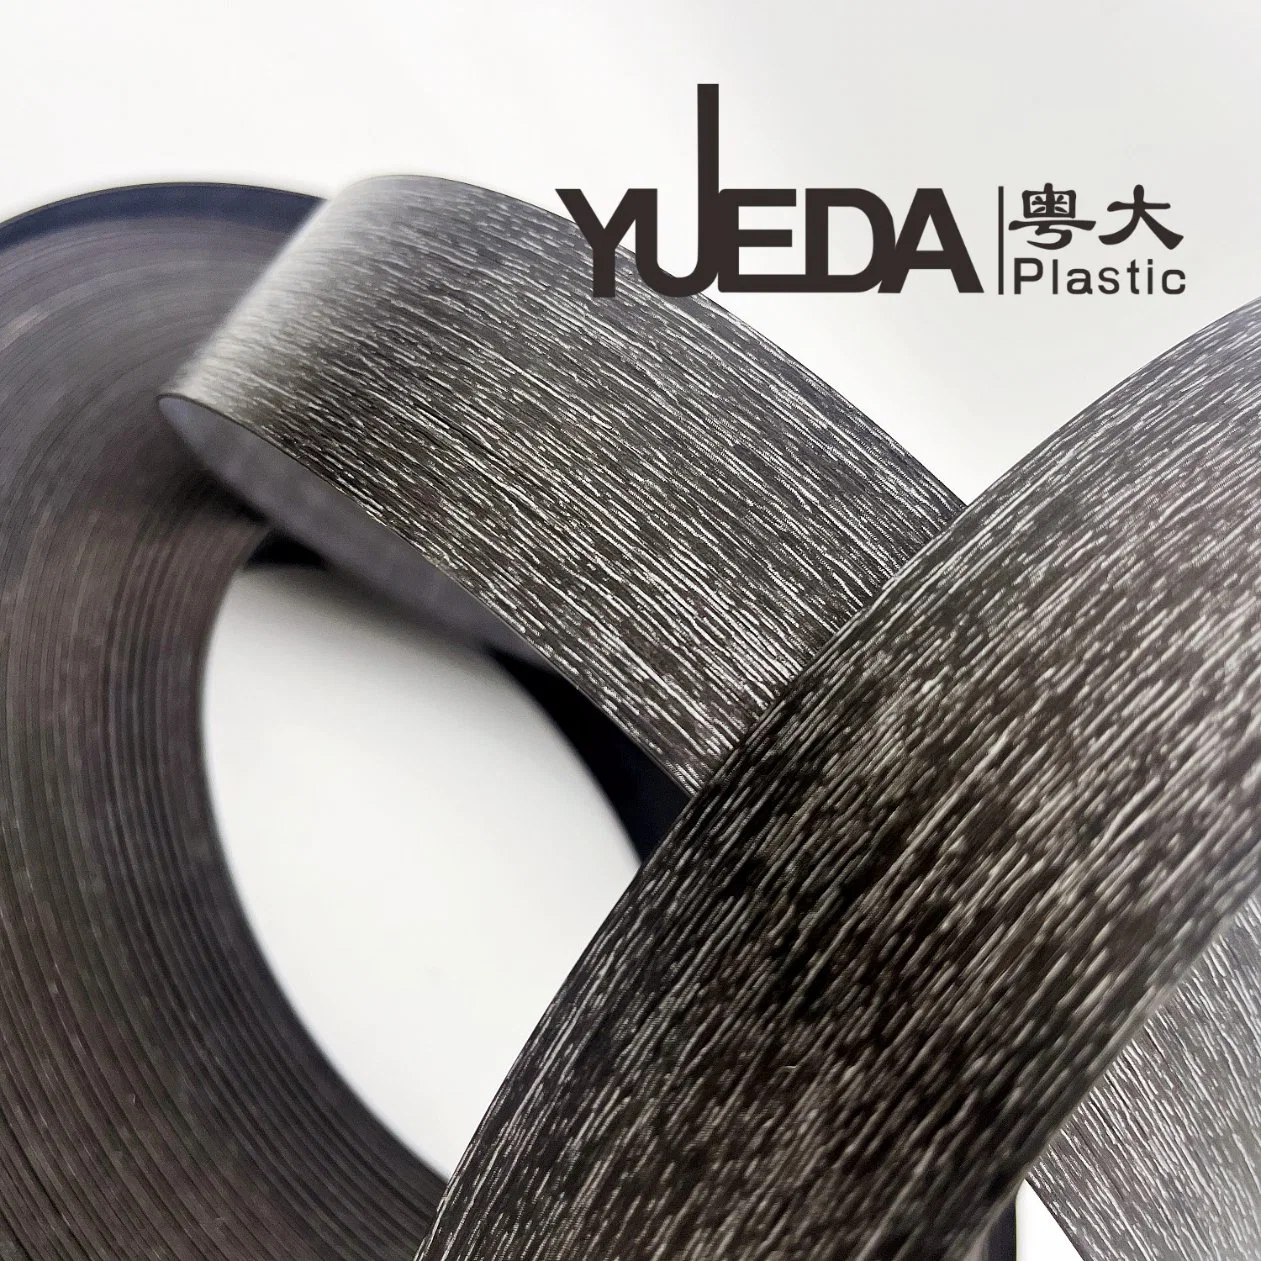 Accessoires de meubles Yueda PROFIL PVC PVC Woodgrain Edge pour le contreplaqué de baguage